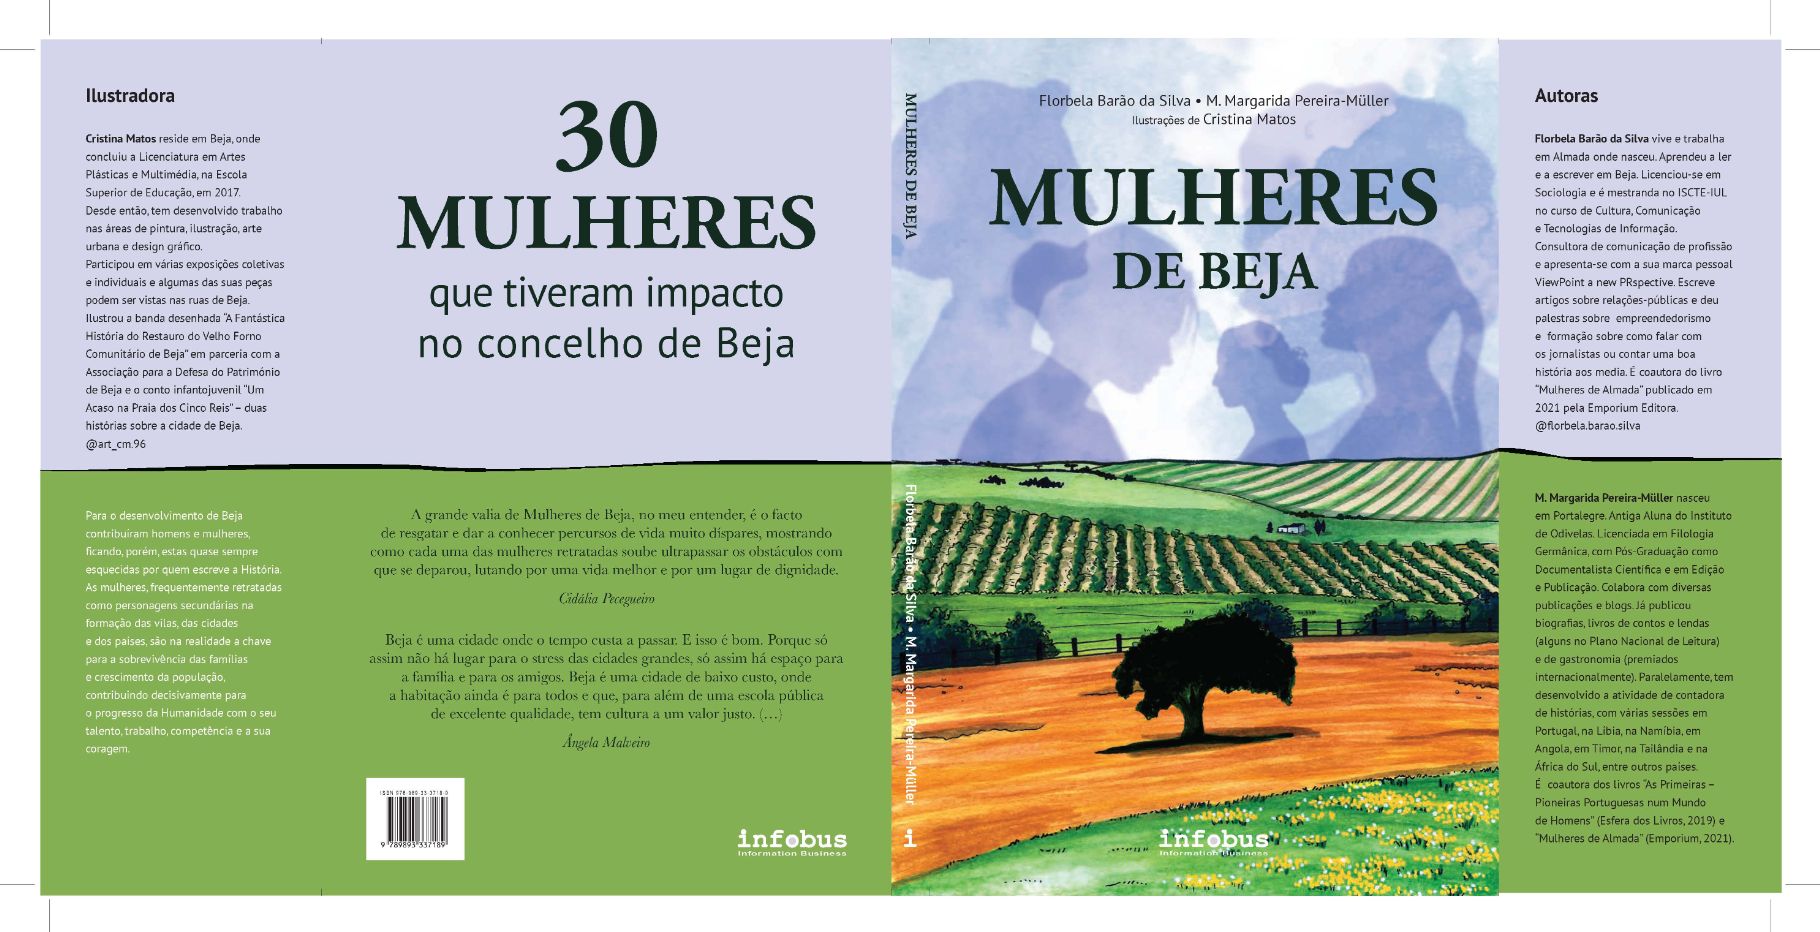 Livro “Mulheres de Beja” retrata 30 mulheres que tiveram impacto na capital do Baixo Alentejo